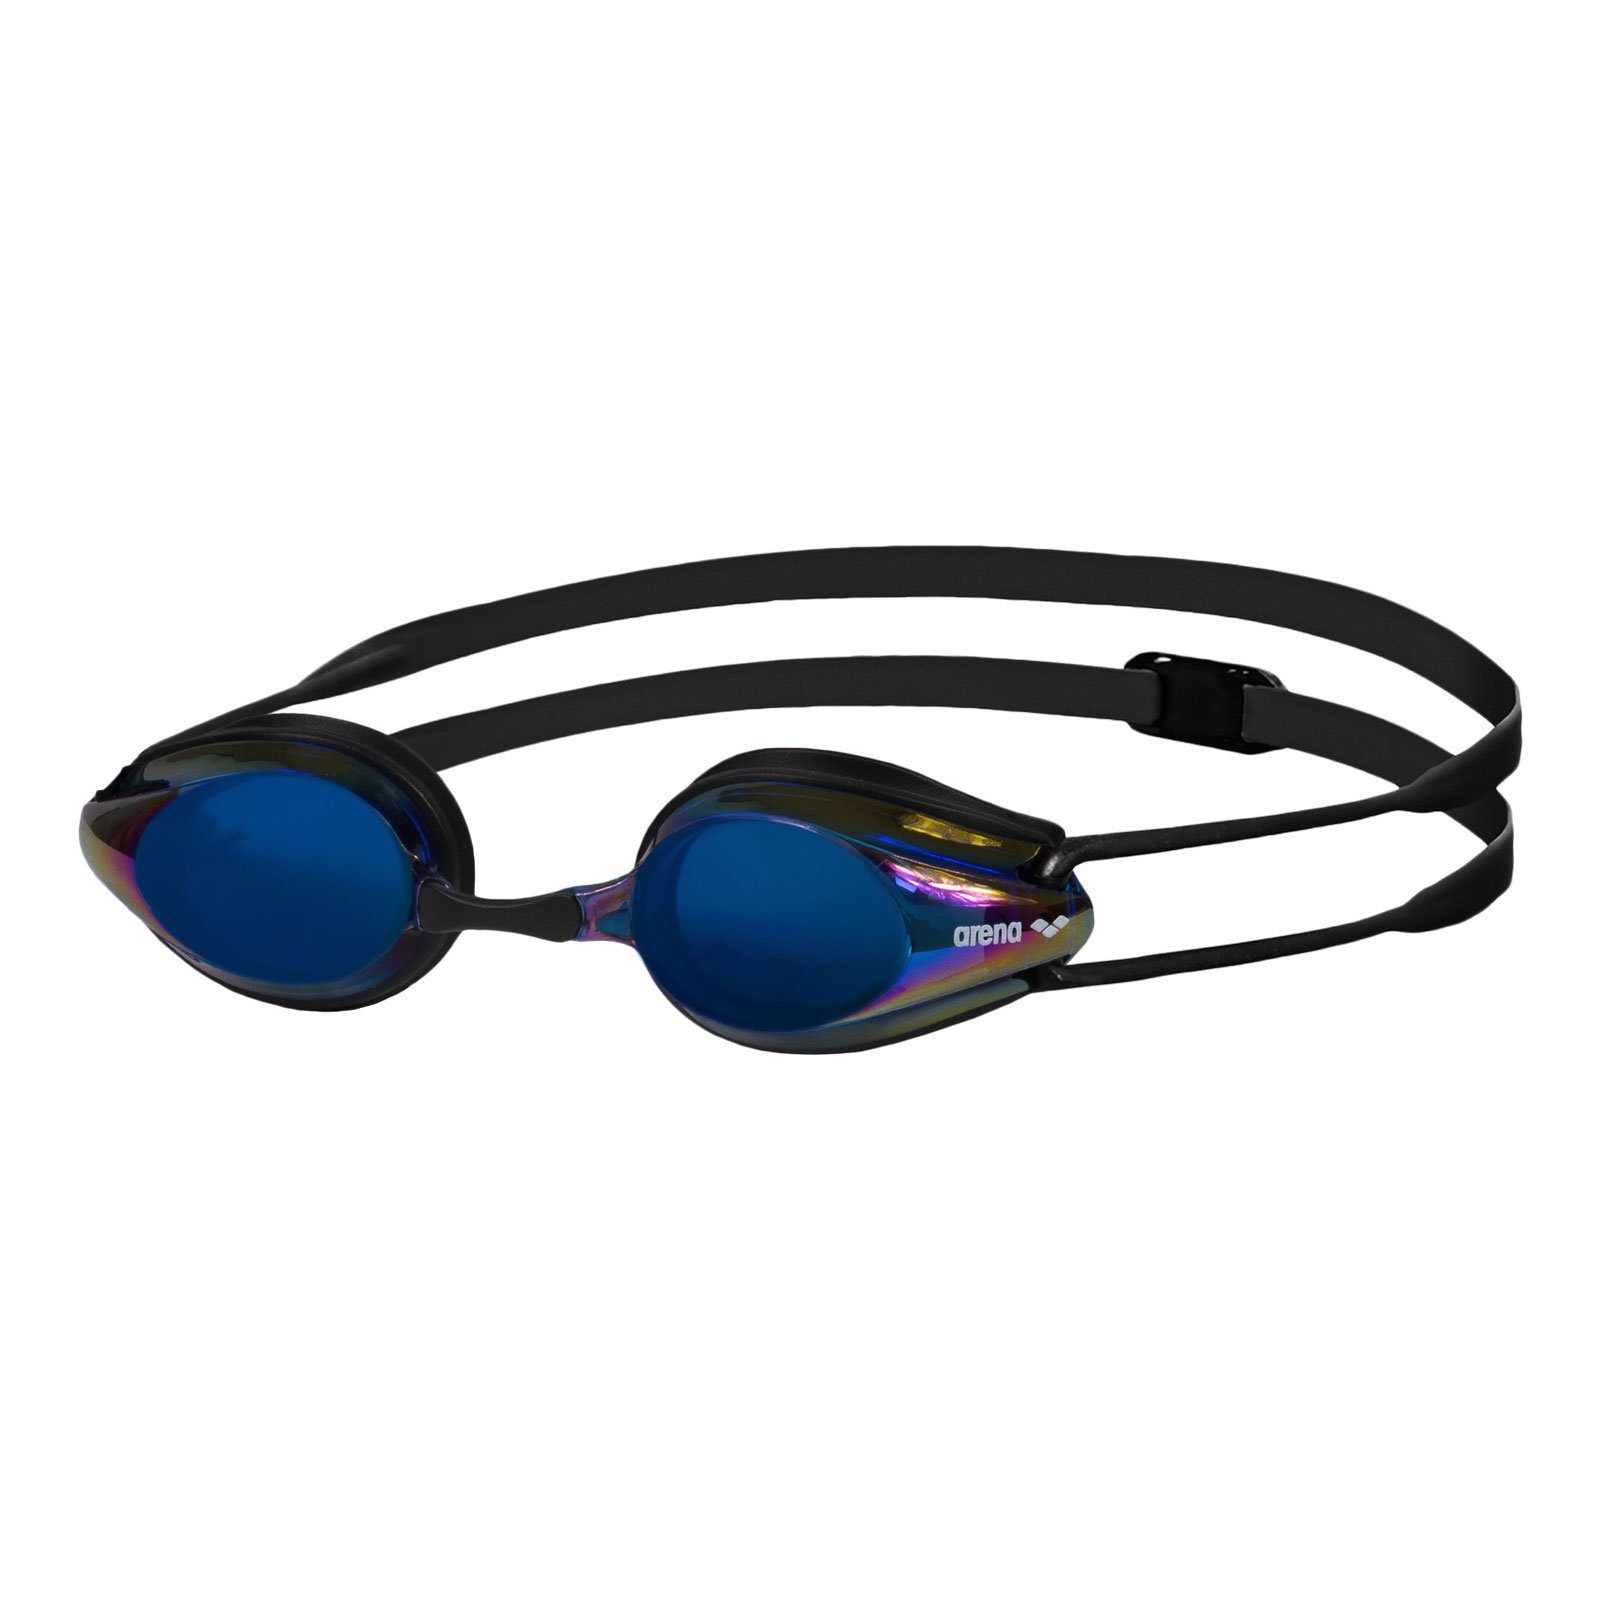 Arena Schwimmbrille Tracks Mirror, mit doppeltem Kopfband für sicheren Halt 74 black - blue multi - black - Outdoor